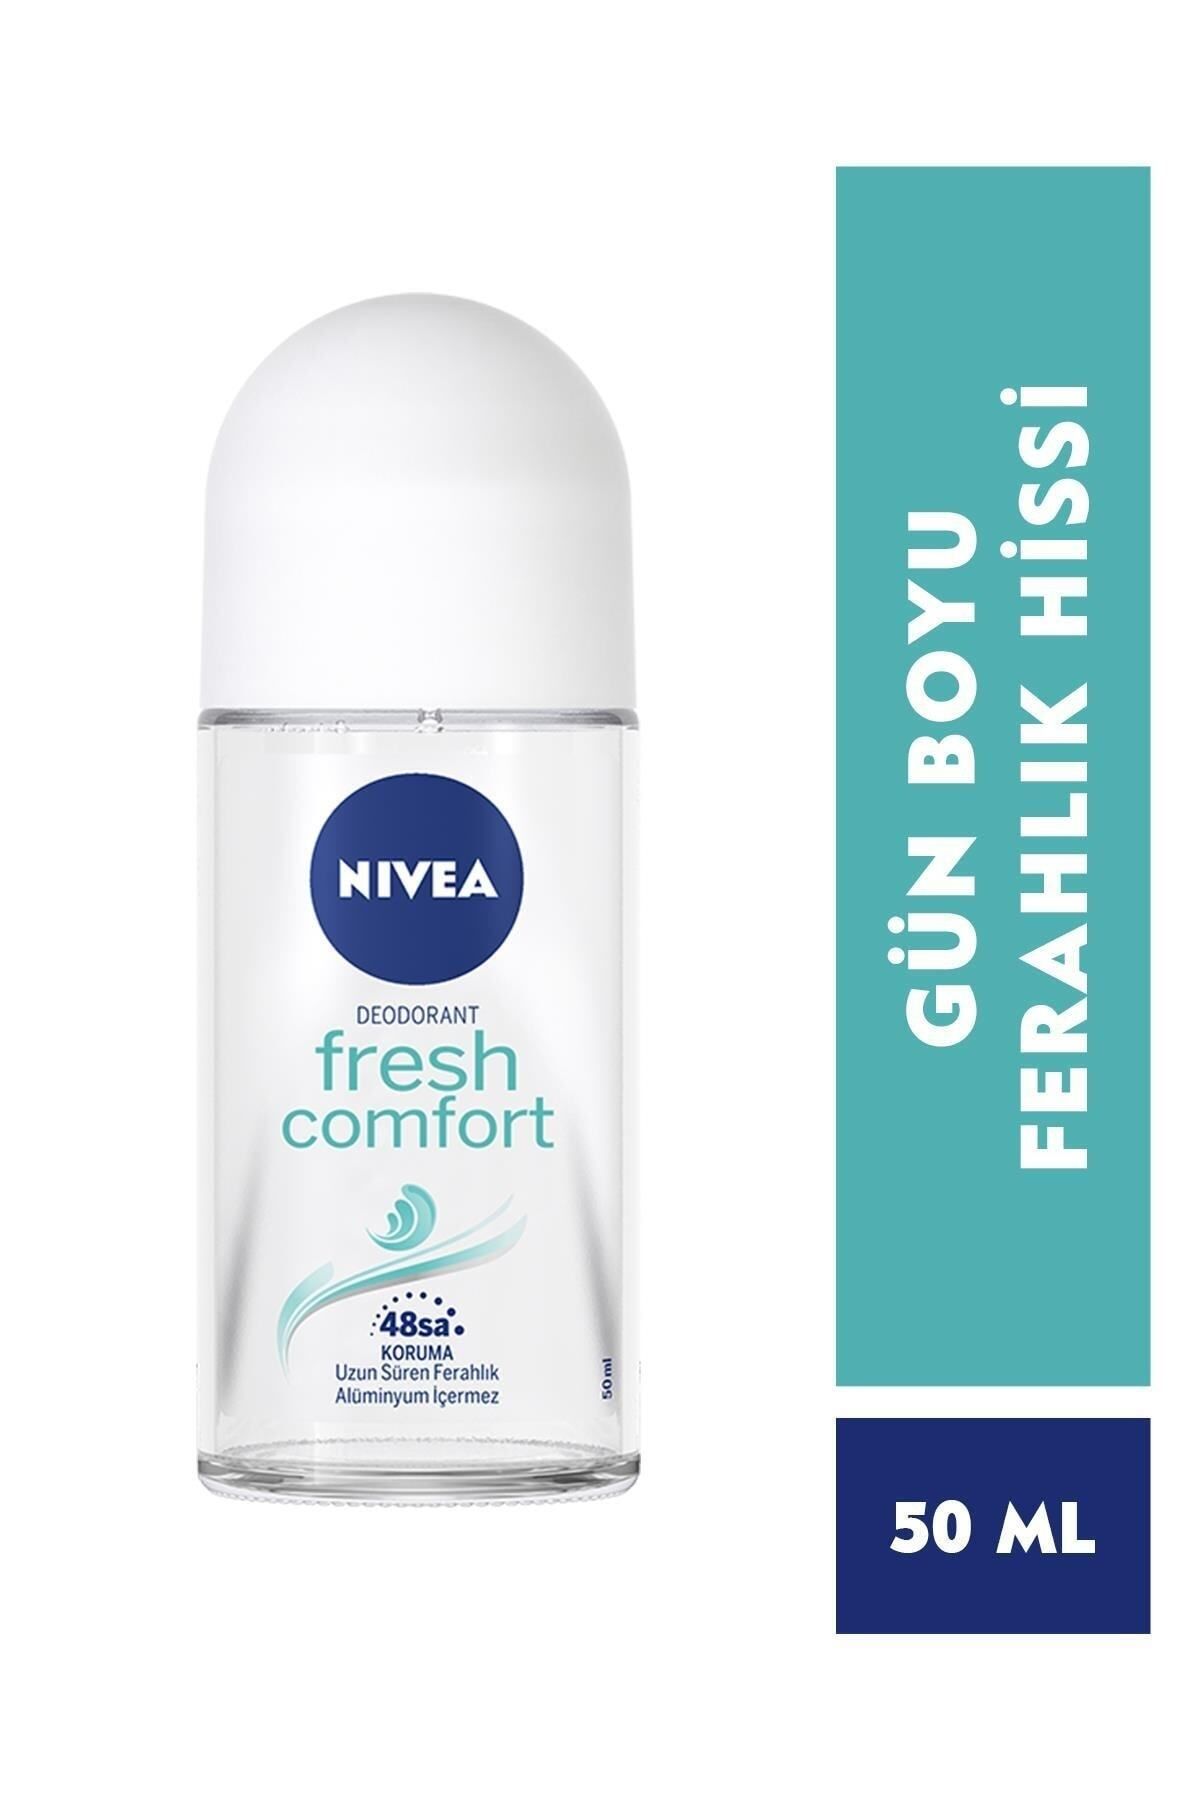 Nivea Kadın Roll On Deodorant Fresh Comfort 50ml,48 Saat Deodorant